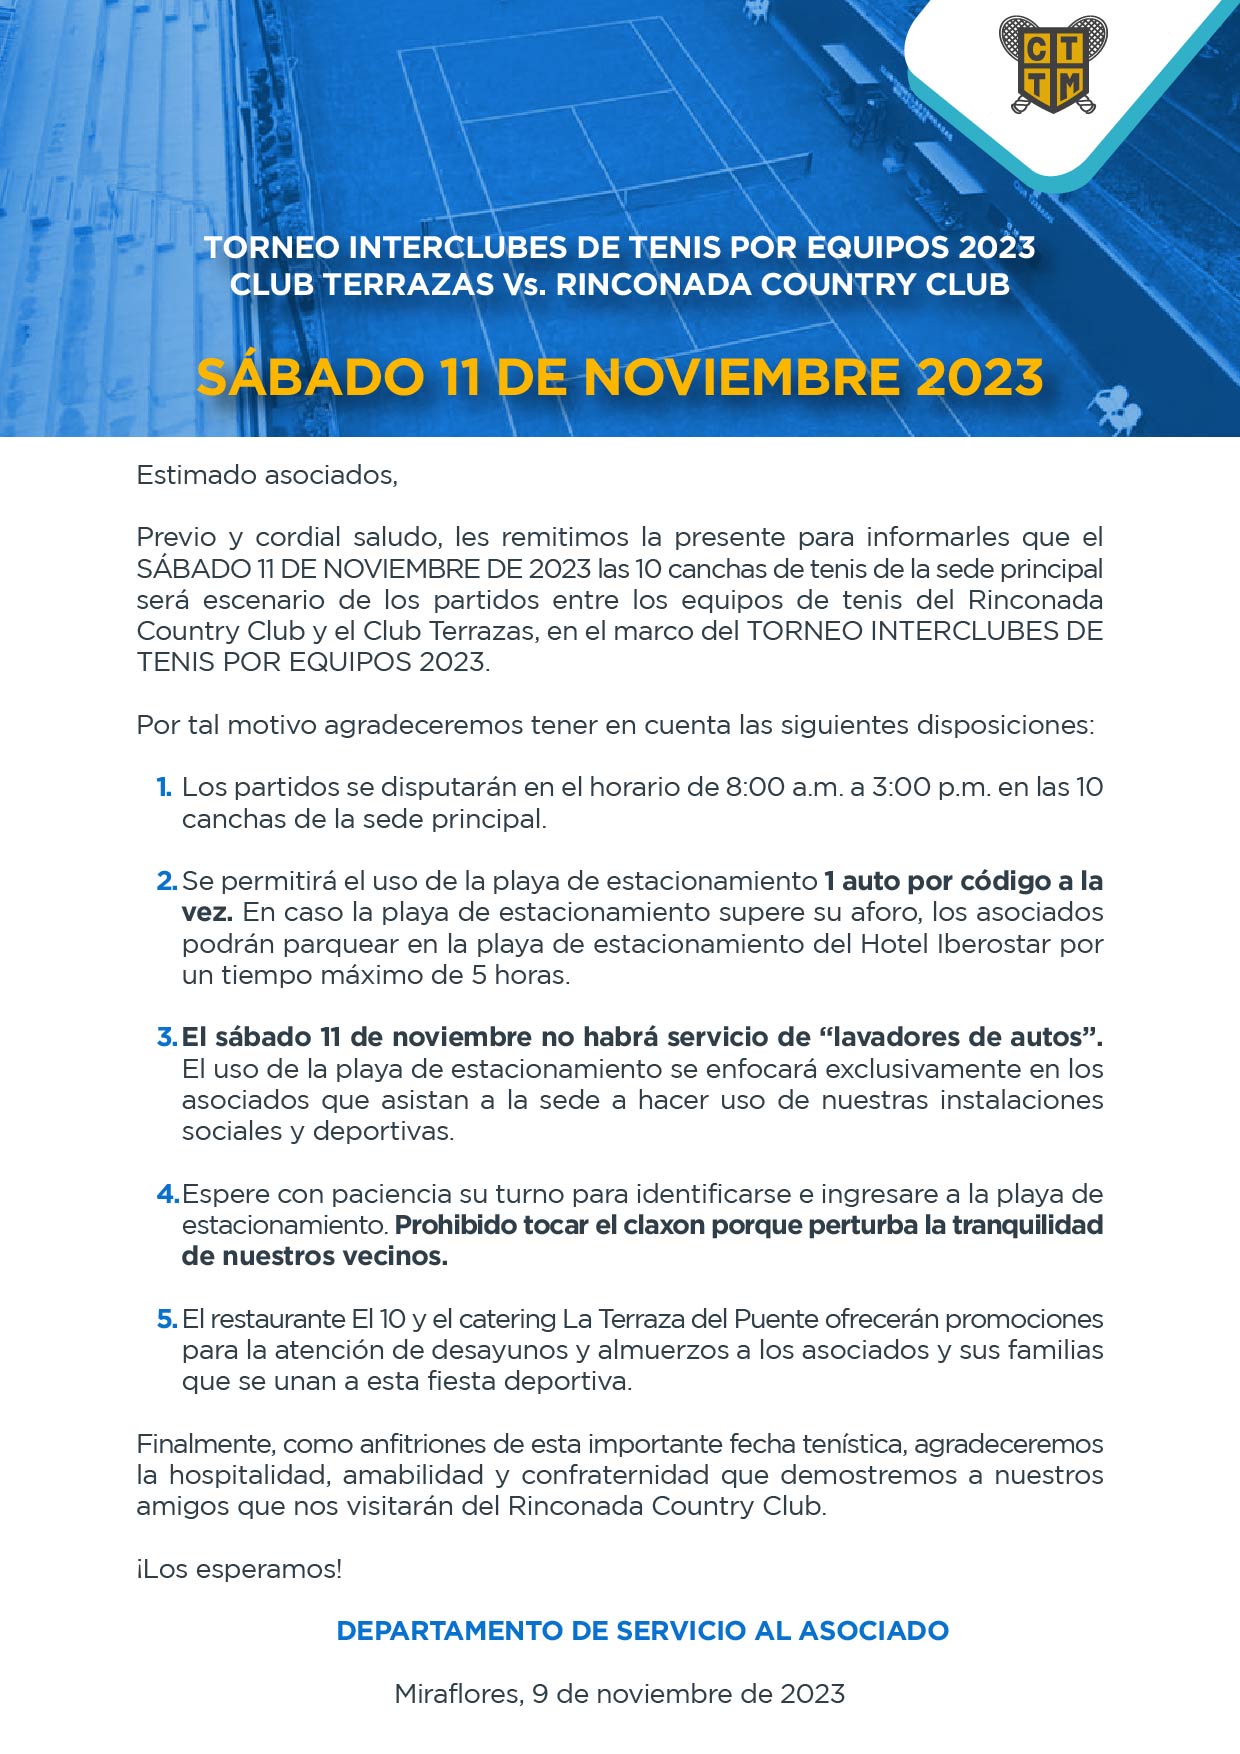 TORNEO INTERCLUBES DE TENIS POR EQUIPOS 2023: CLUB TERRAZAS Vs. RINCONADA COUNTRY CLUB